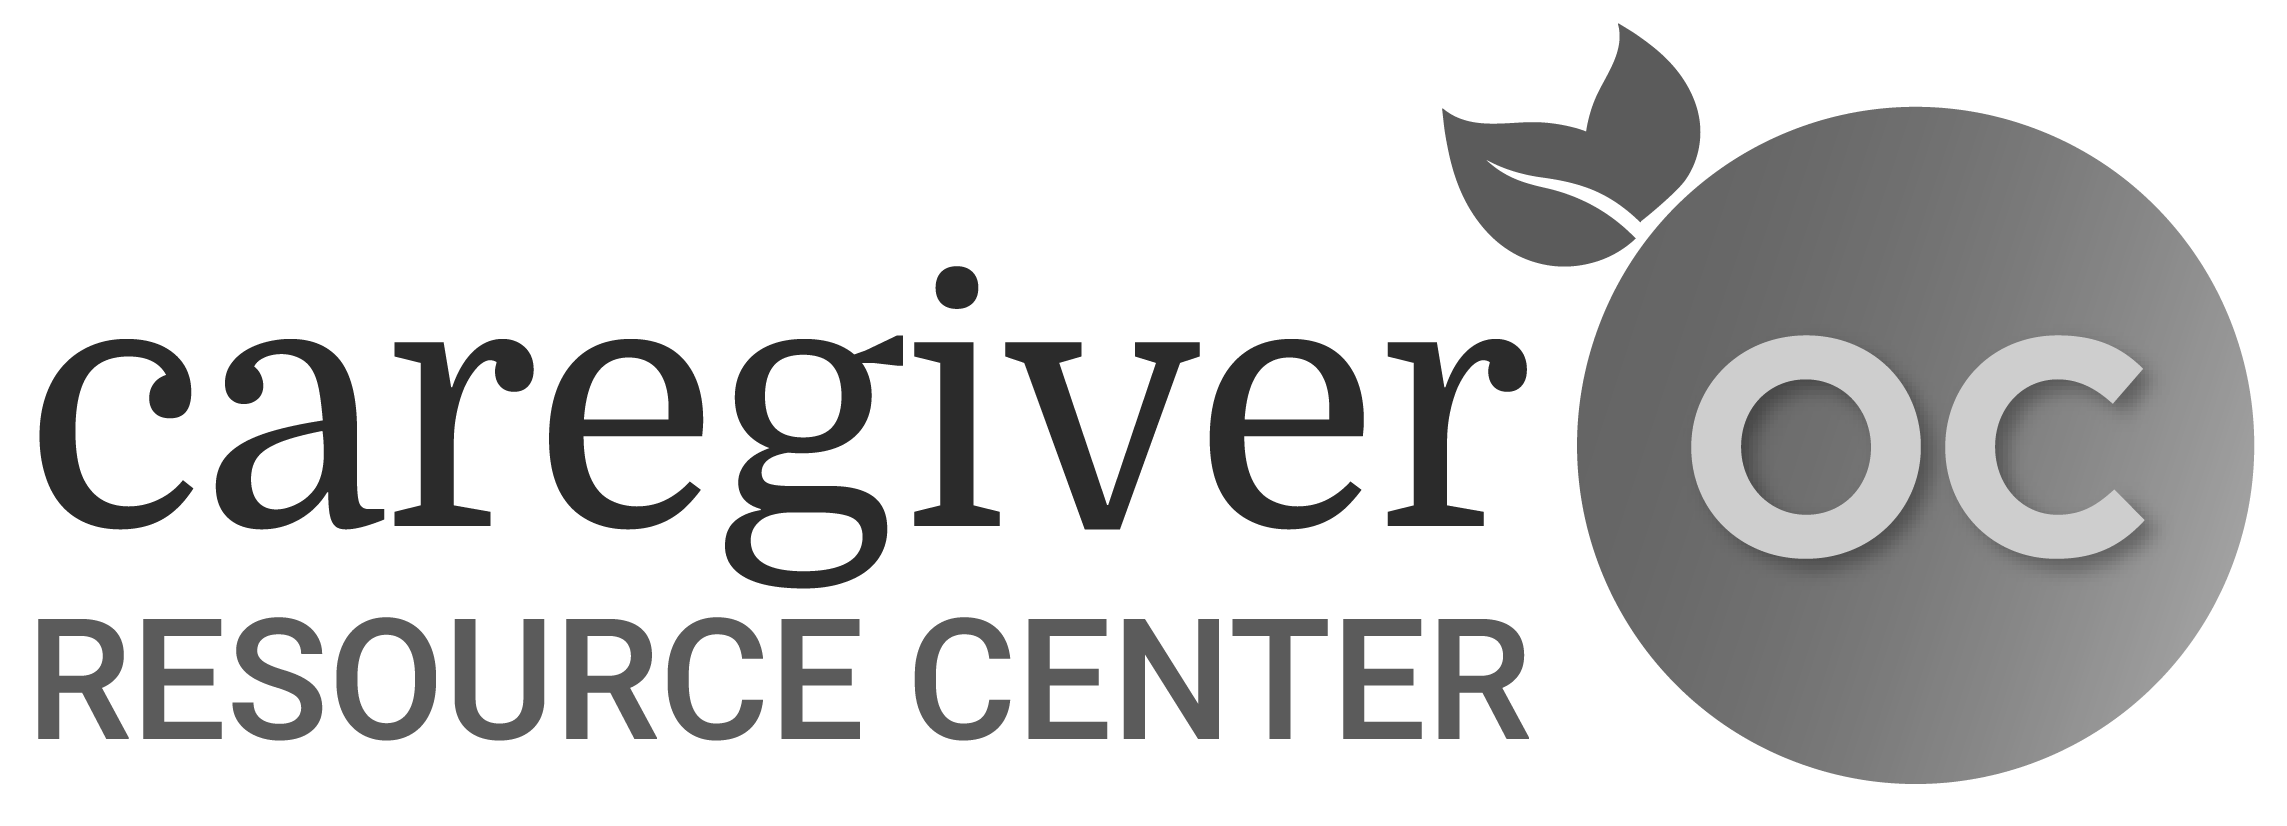 Caregiver Resource Center OC, providing caregiver resources to Orange County